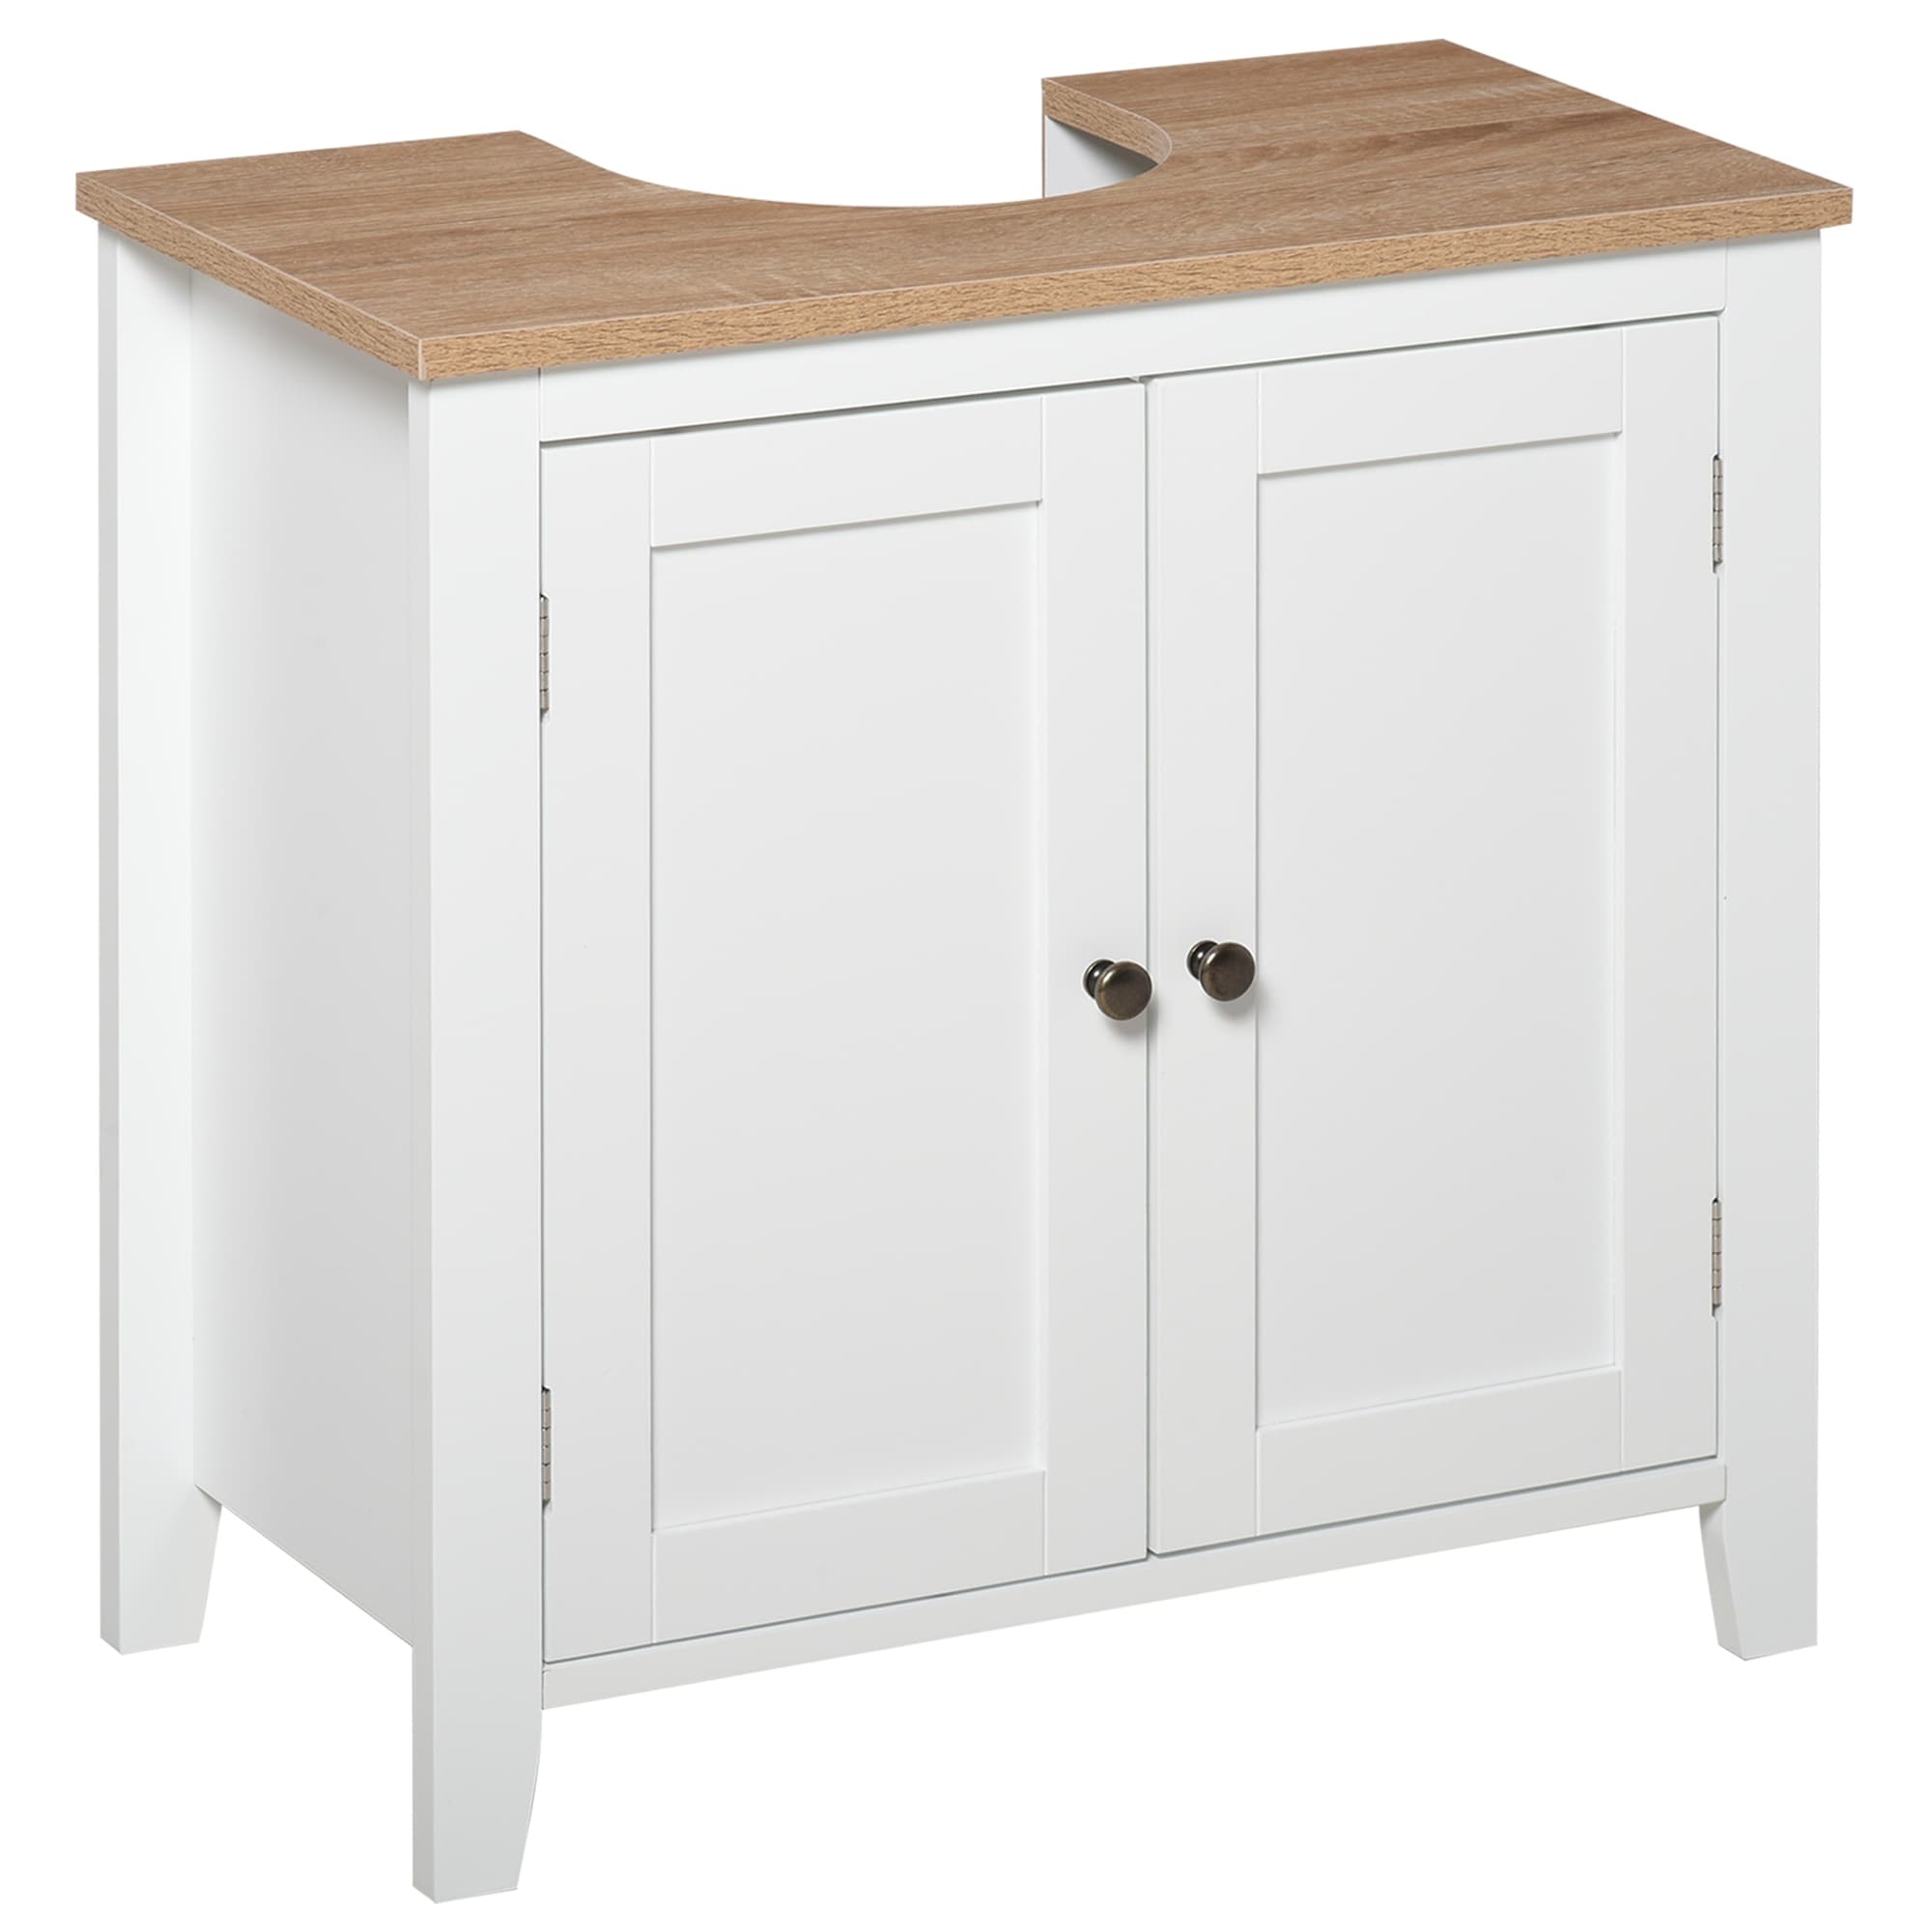 LHS Germanica™ ZUMA Premium Under Sink Bathroom Vanity Storage Cupboard Cabinet Unit in White 